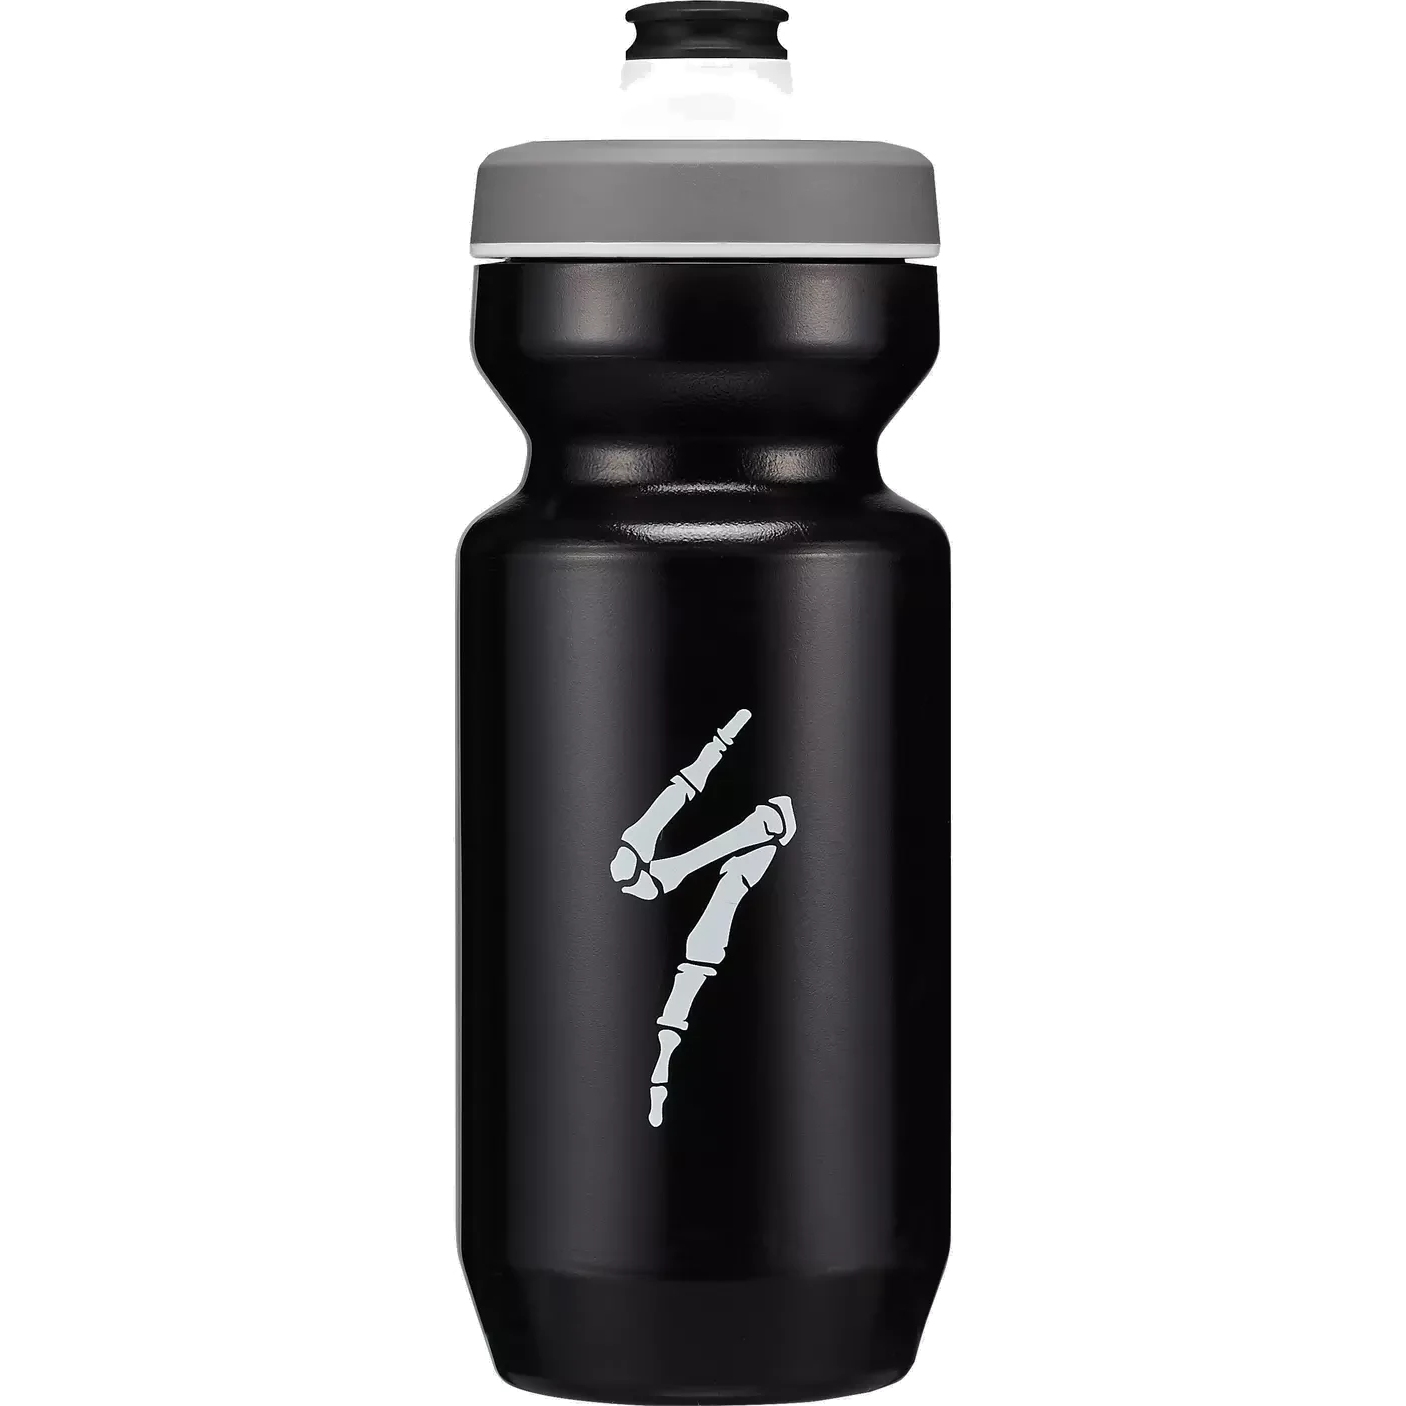 Produktbild von Specialized Purist WaterGate Trinkflasche 650ml - Bones Black